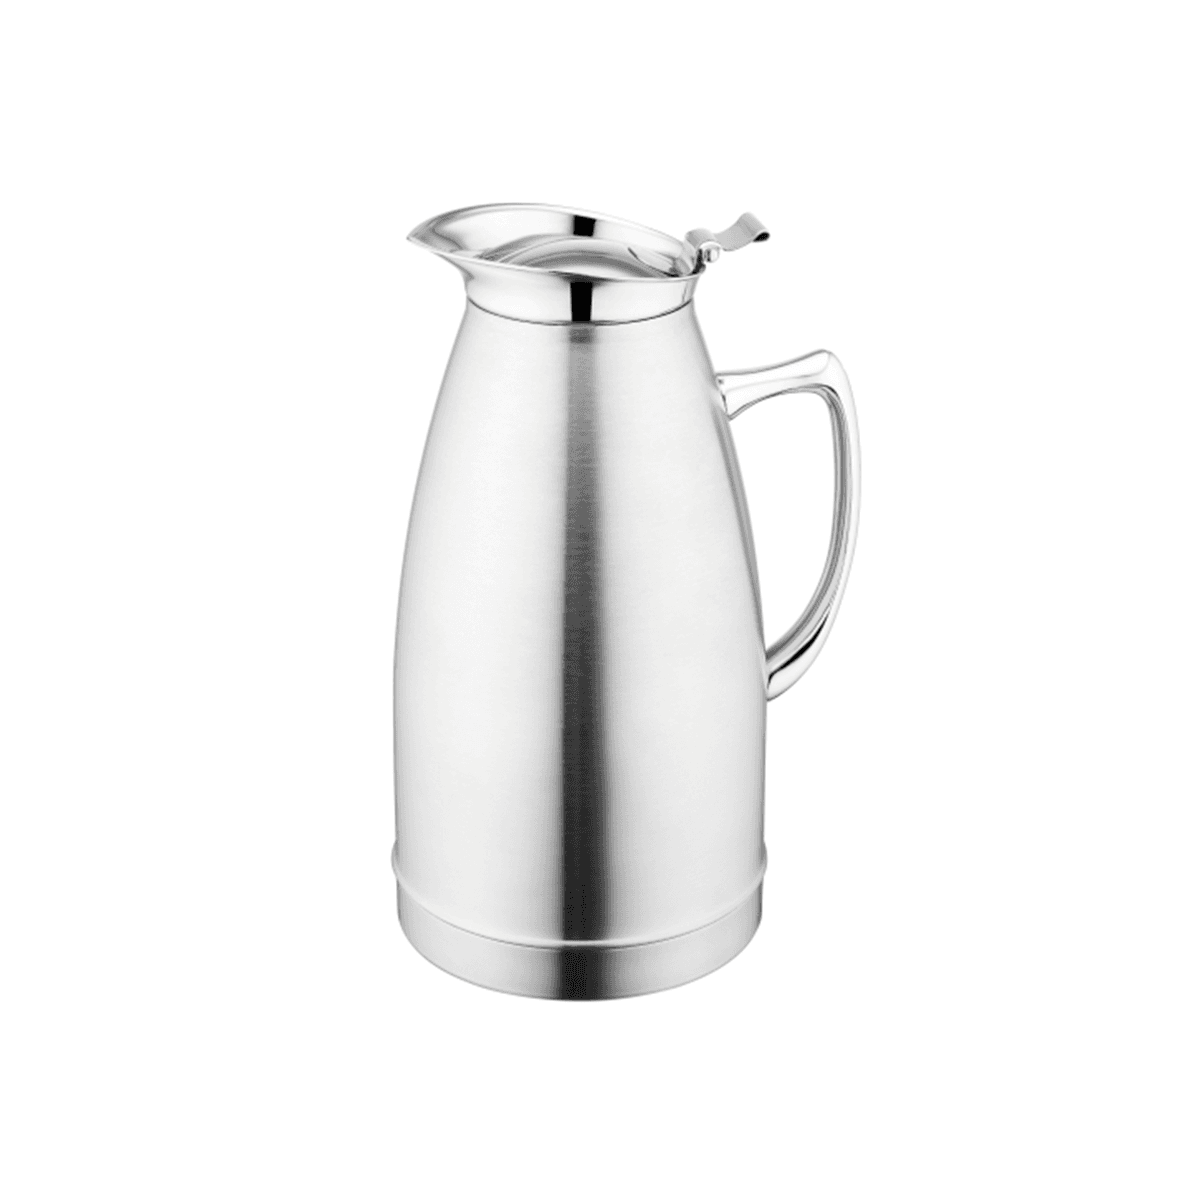 ترمس شاي وقهوة حافظ للحرارة 1.5 لتر ستانلس ستيل فضي سانكس Sunnex Stainless Steel Vacuum Beverage Pot